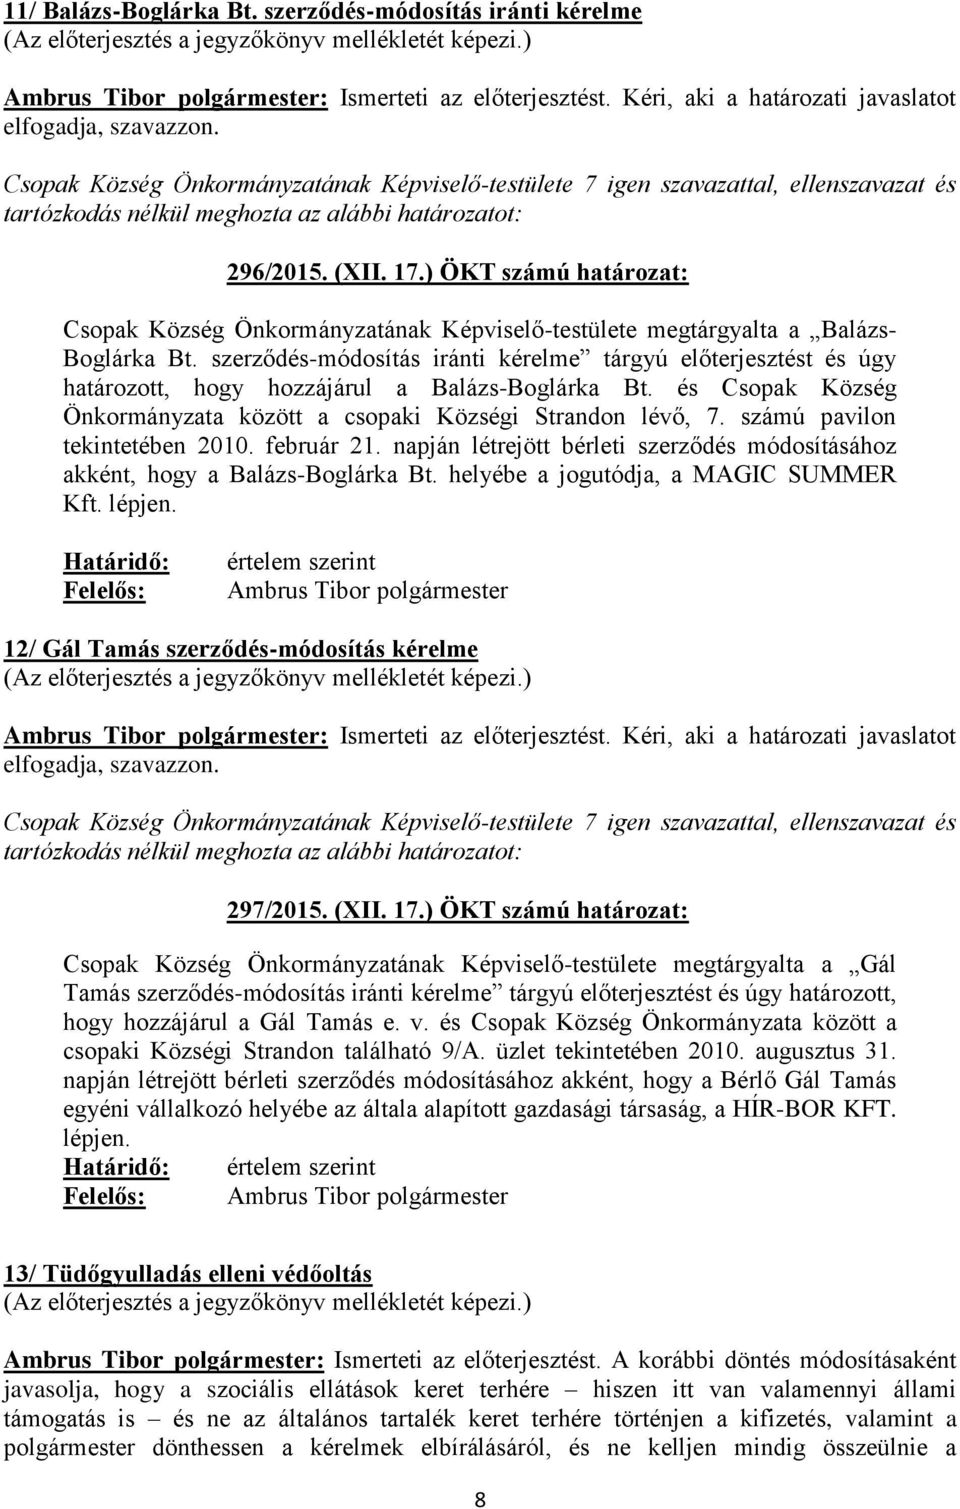 szerződés-módosítás iránti kérelme tárgyú előterjesztést és úgy határozott, hogy hozzájárul a Balázs-Boglárka Bt. és Csopak Község Önkormányzata között a csopaki Községi Strandon lévő, 7.